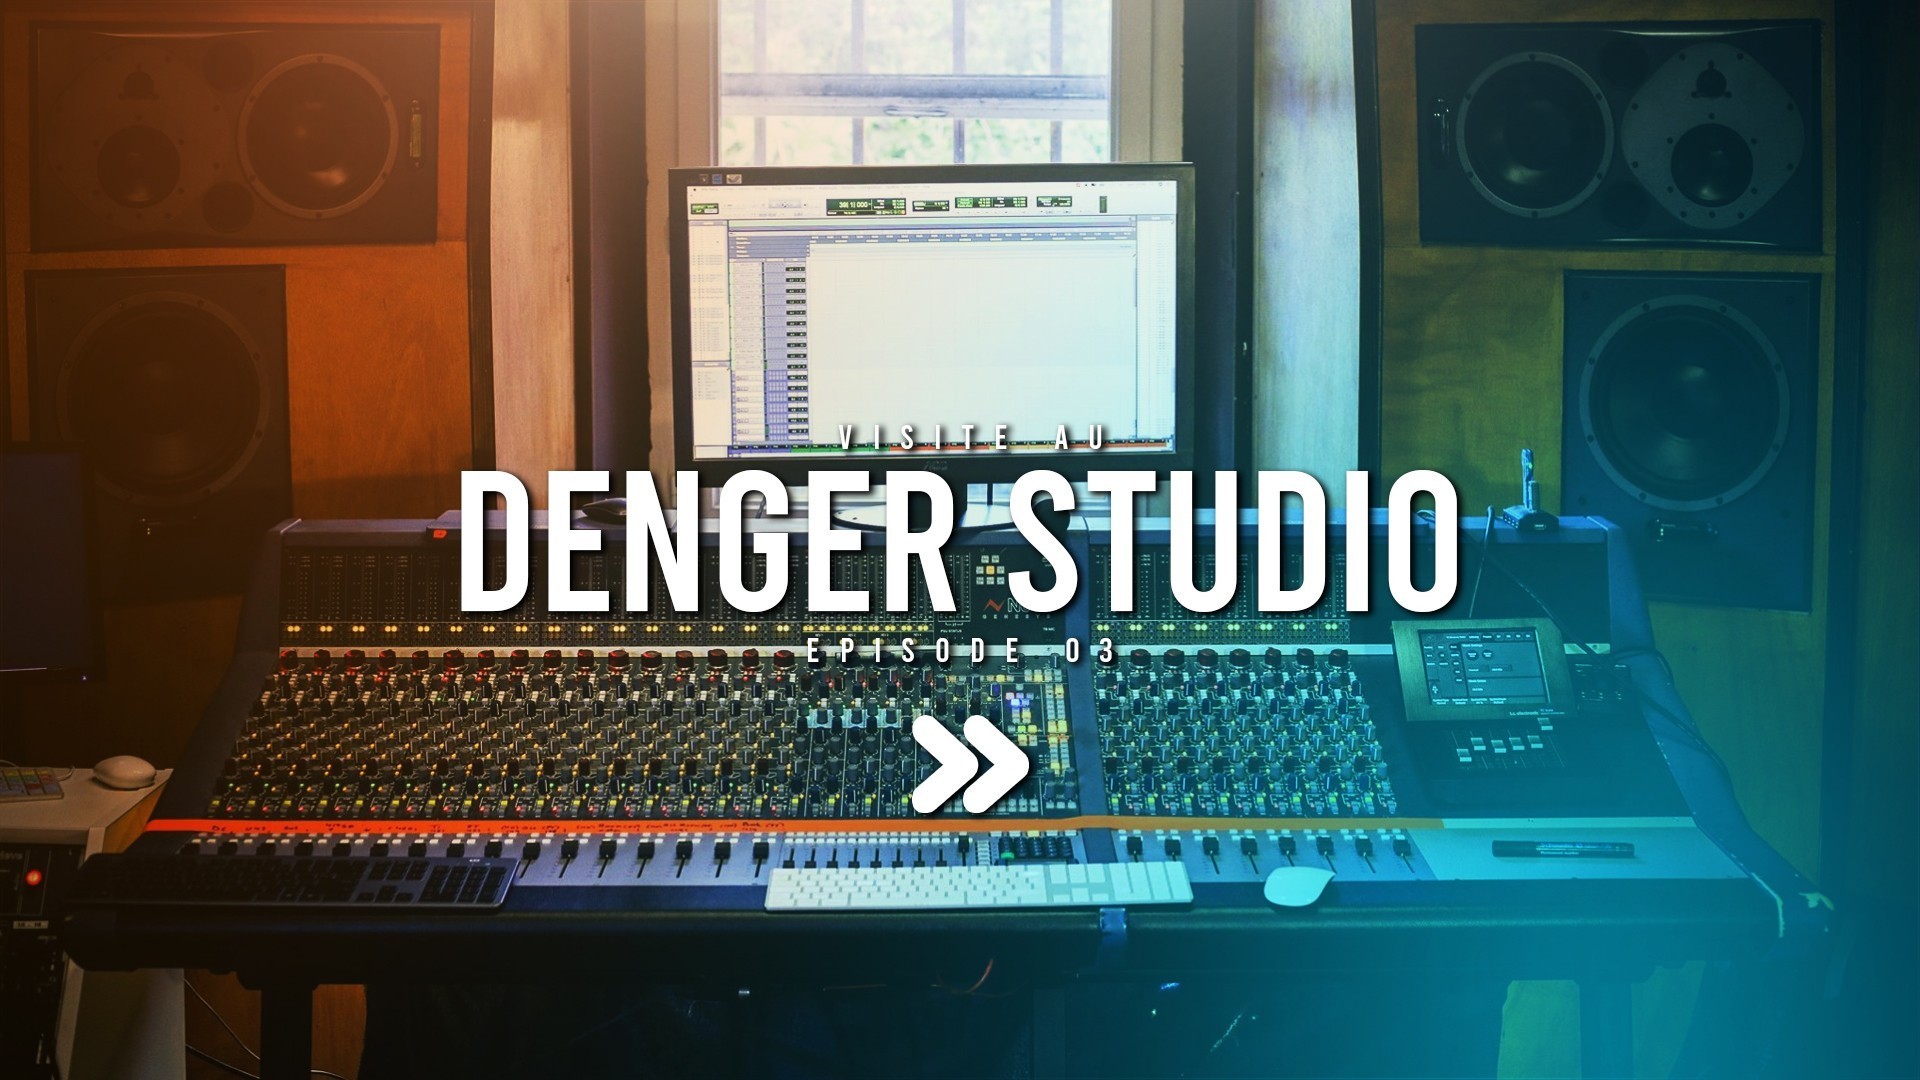 Visite au Denger Studio